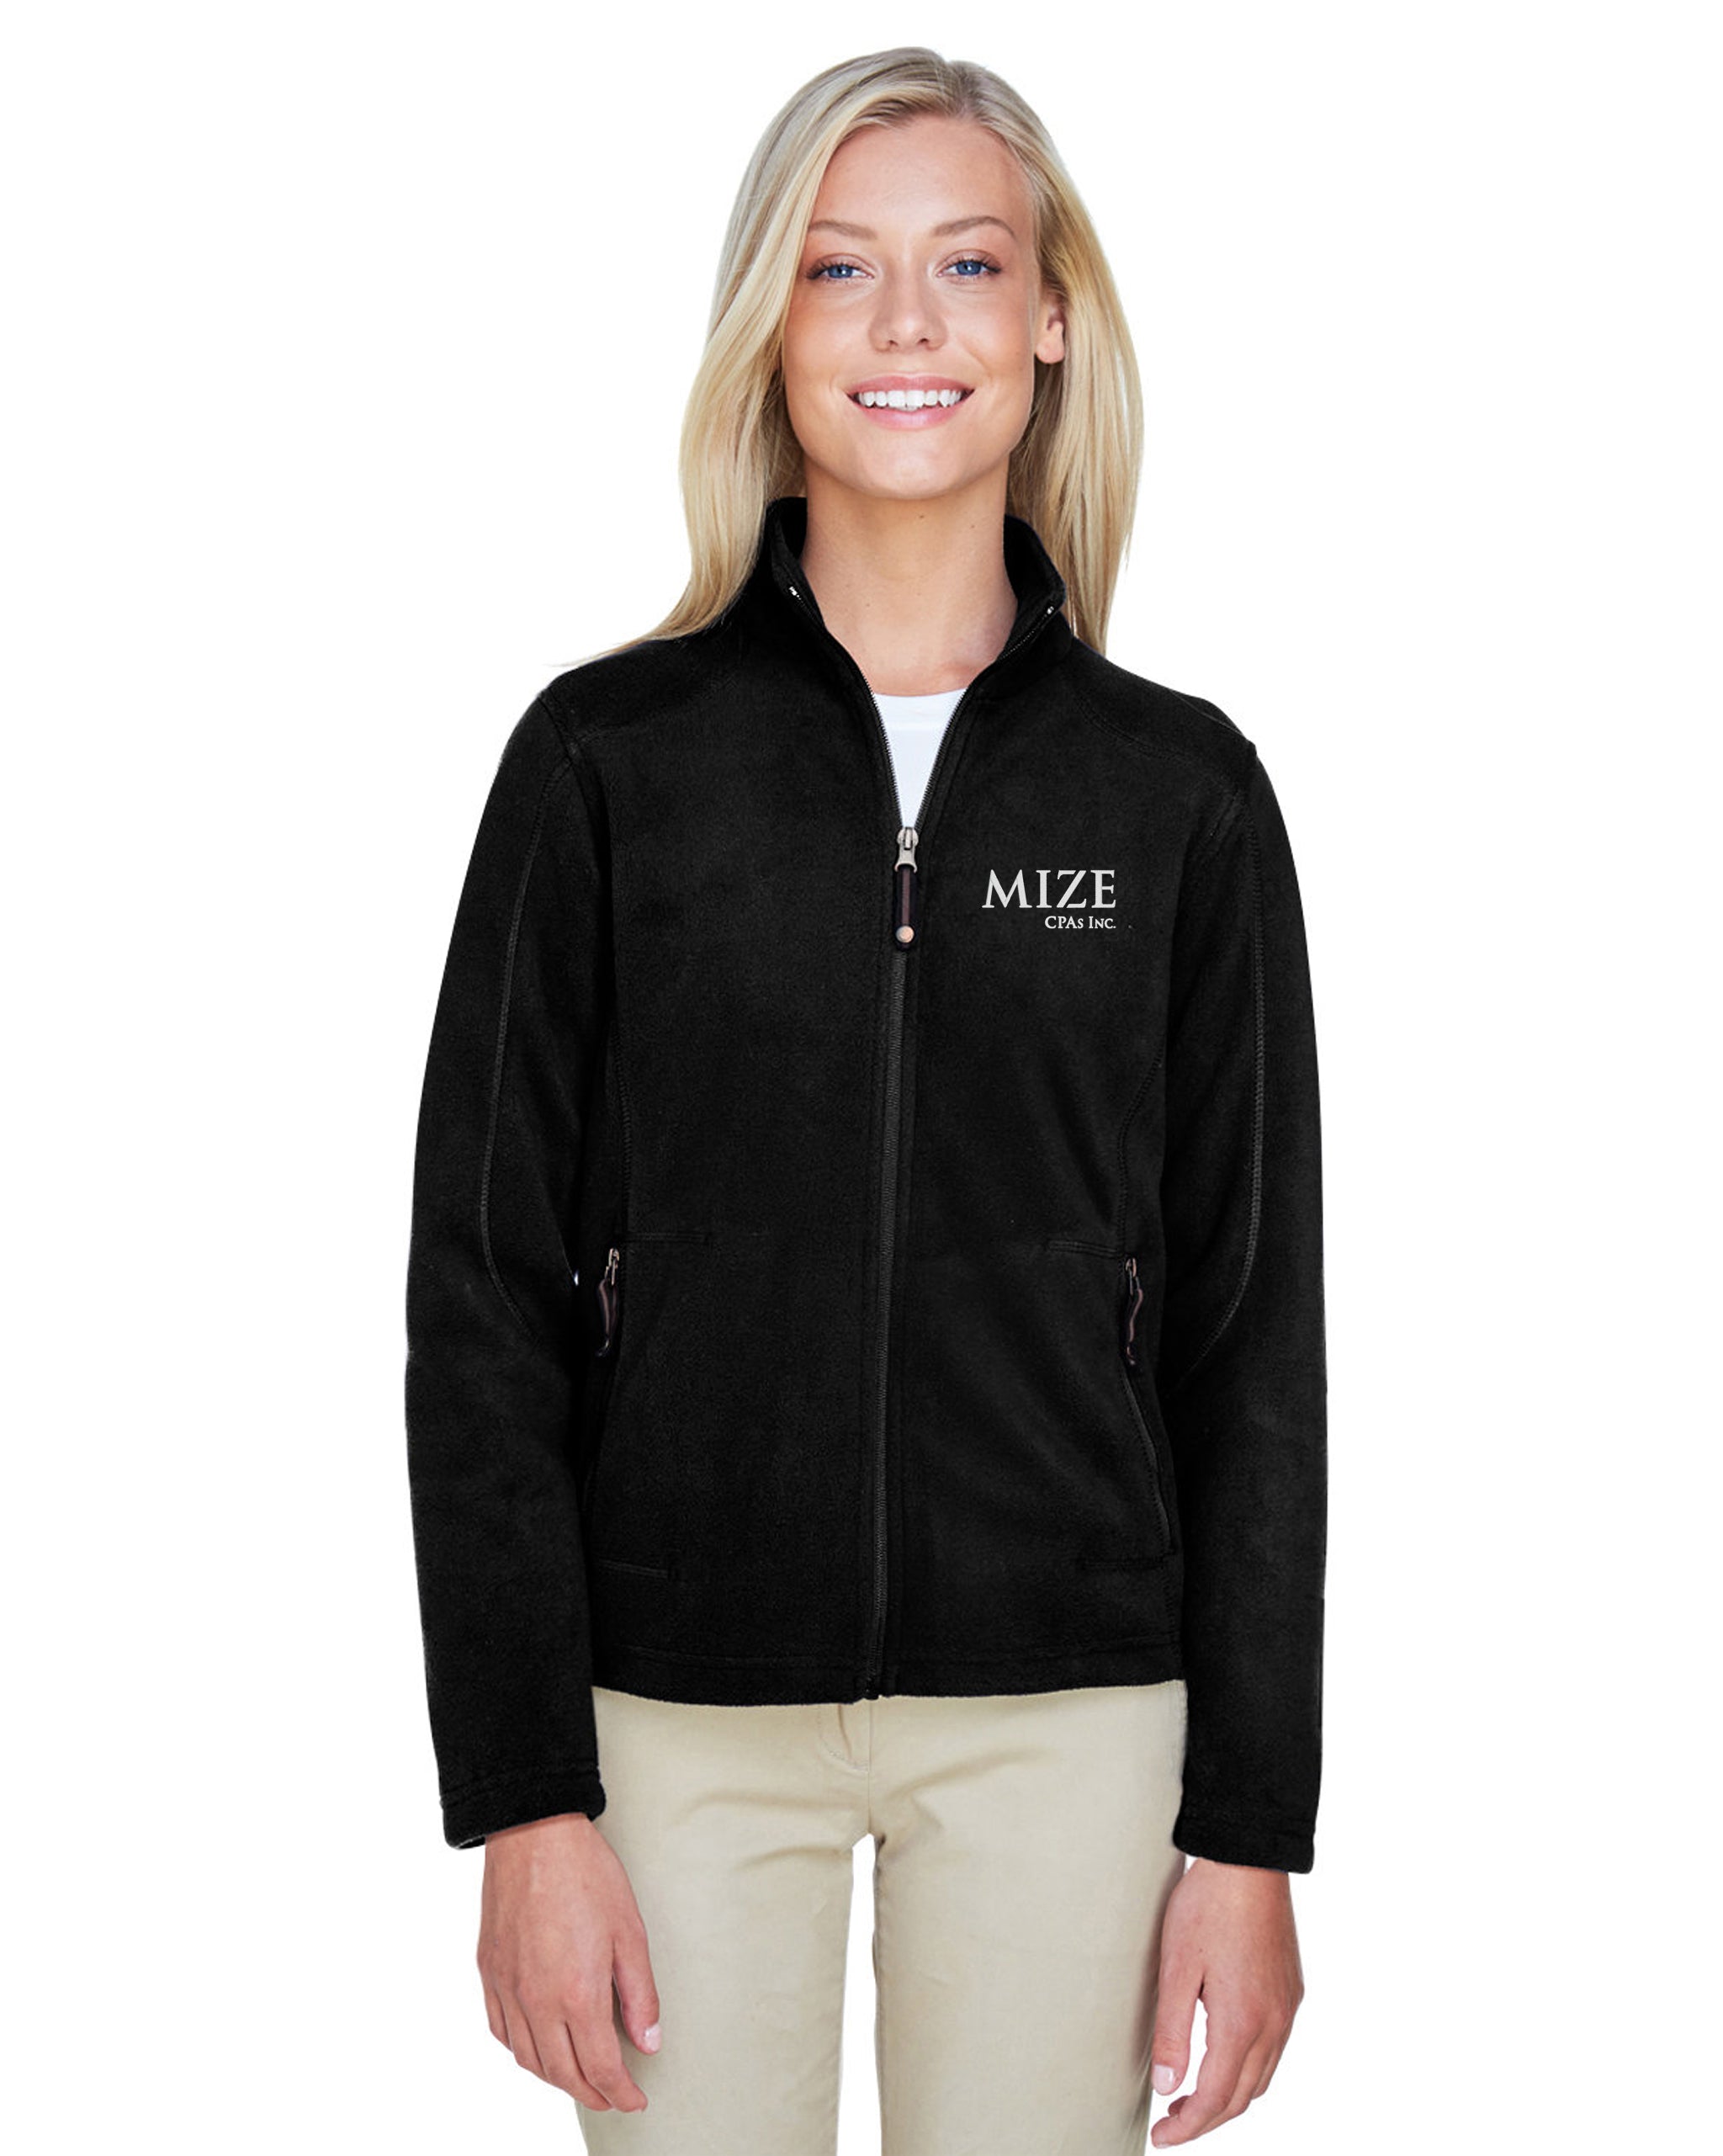 Mize CPAs Inc. - North End Ladies' Voyage Fleece Jacket - 78172